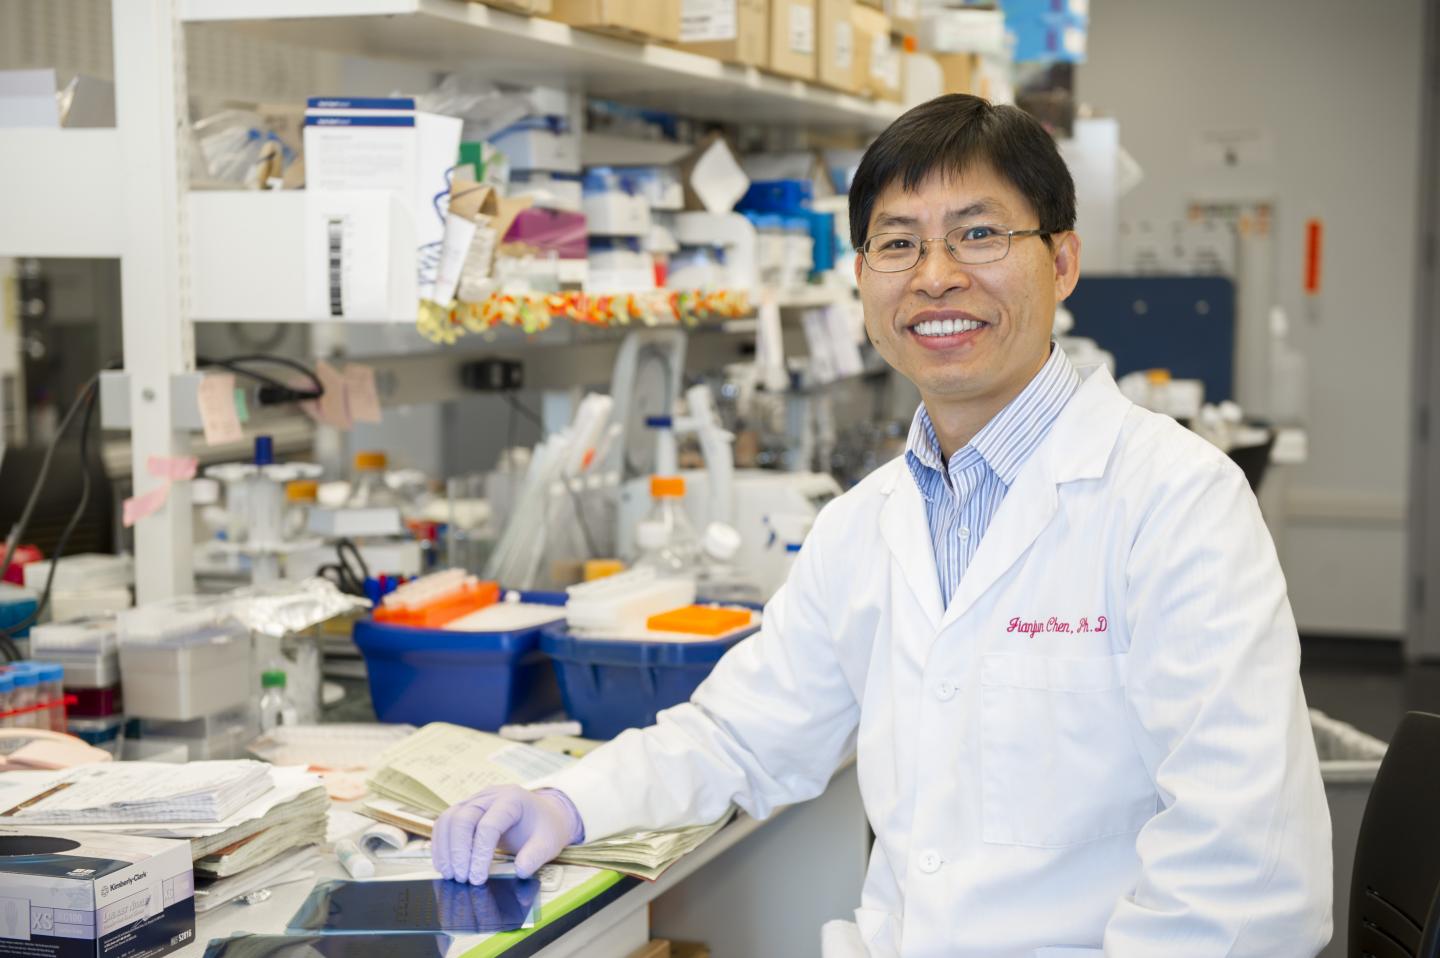 Jianjun Chen, Ph.D., University of Cincinnati (1 of 2)